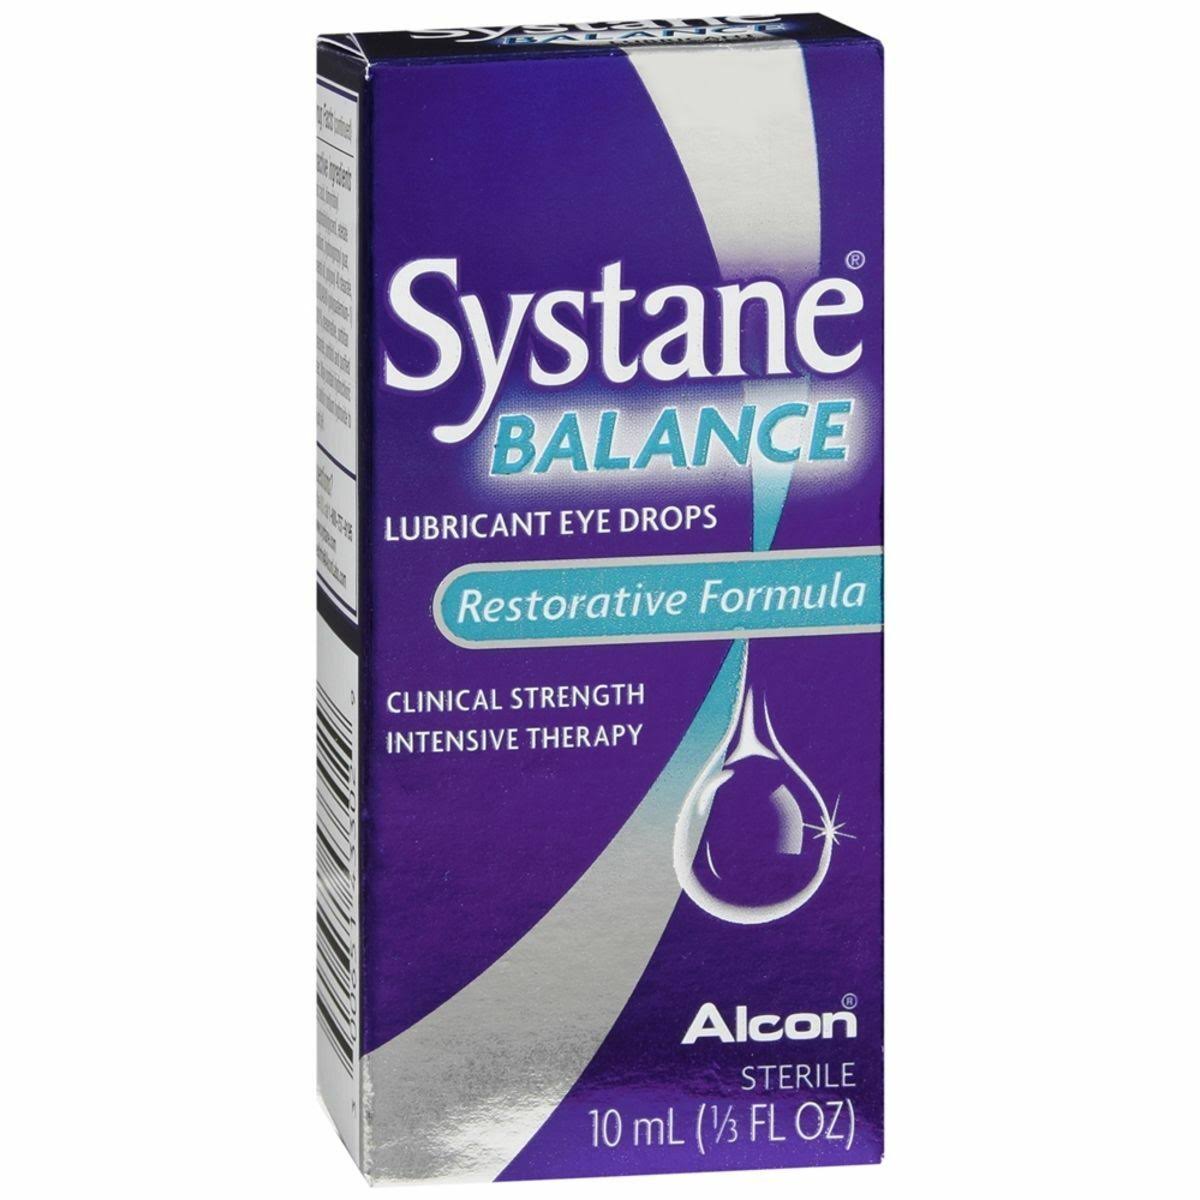 Alcon Systane Balance Lubricant Eye Drops - Restorative Formula, 10ml